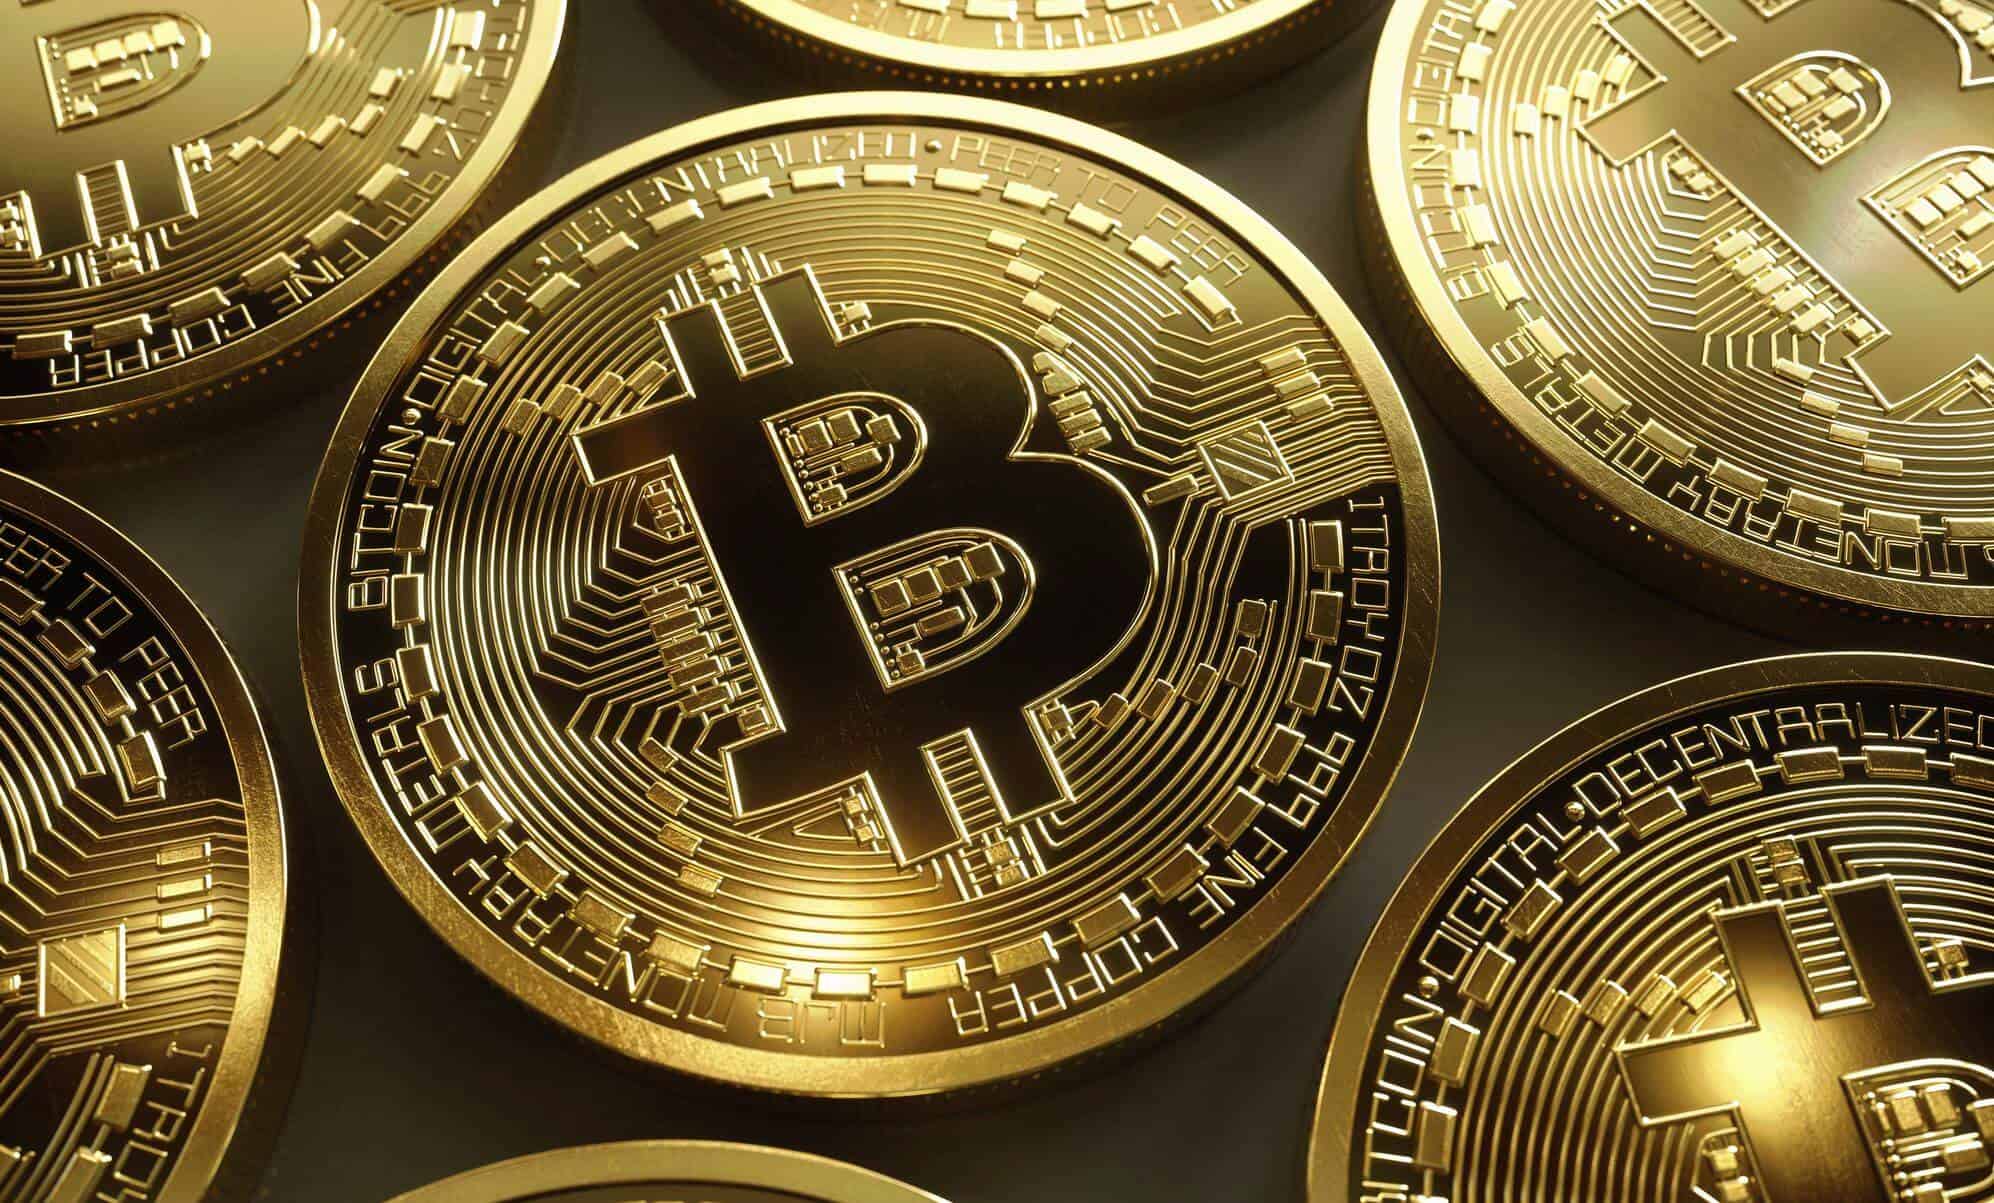 buy bitcoin in belgium with cash